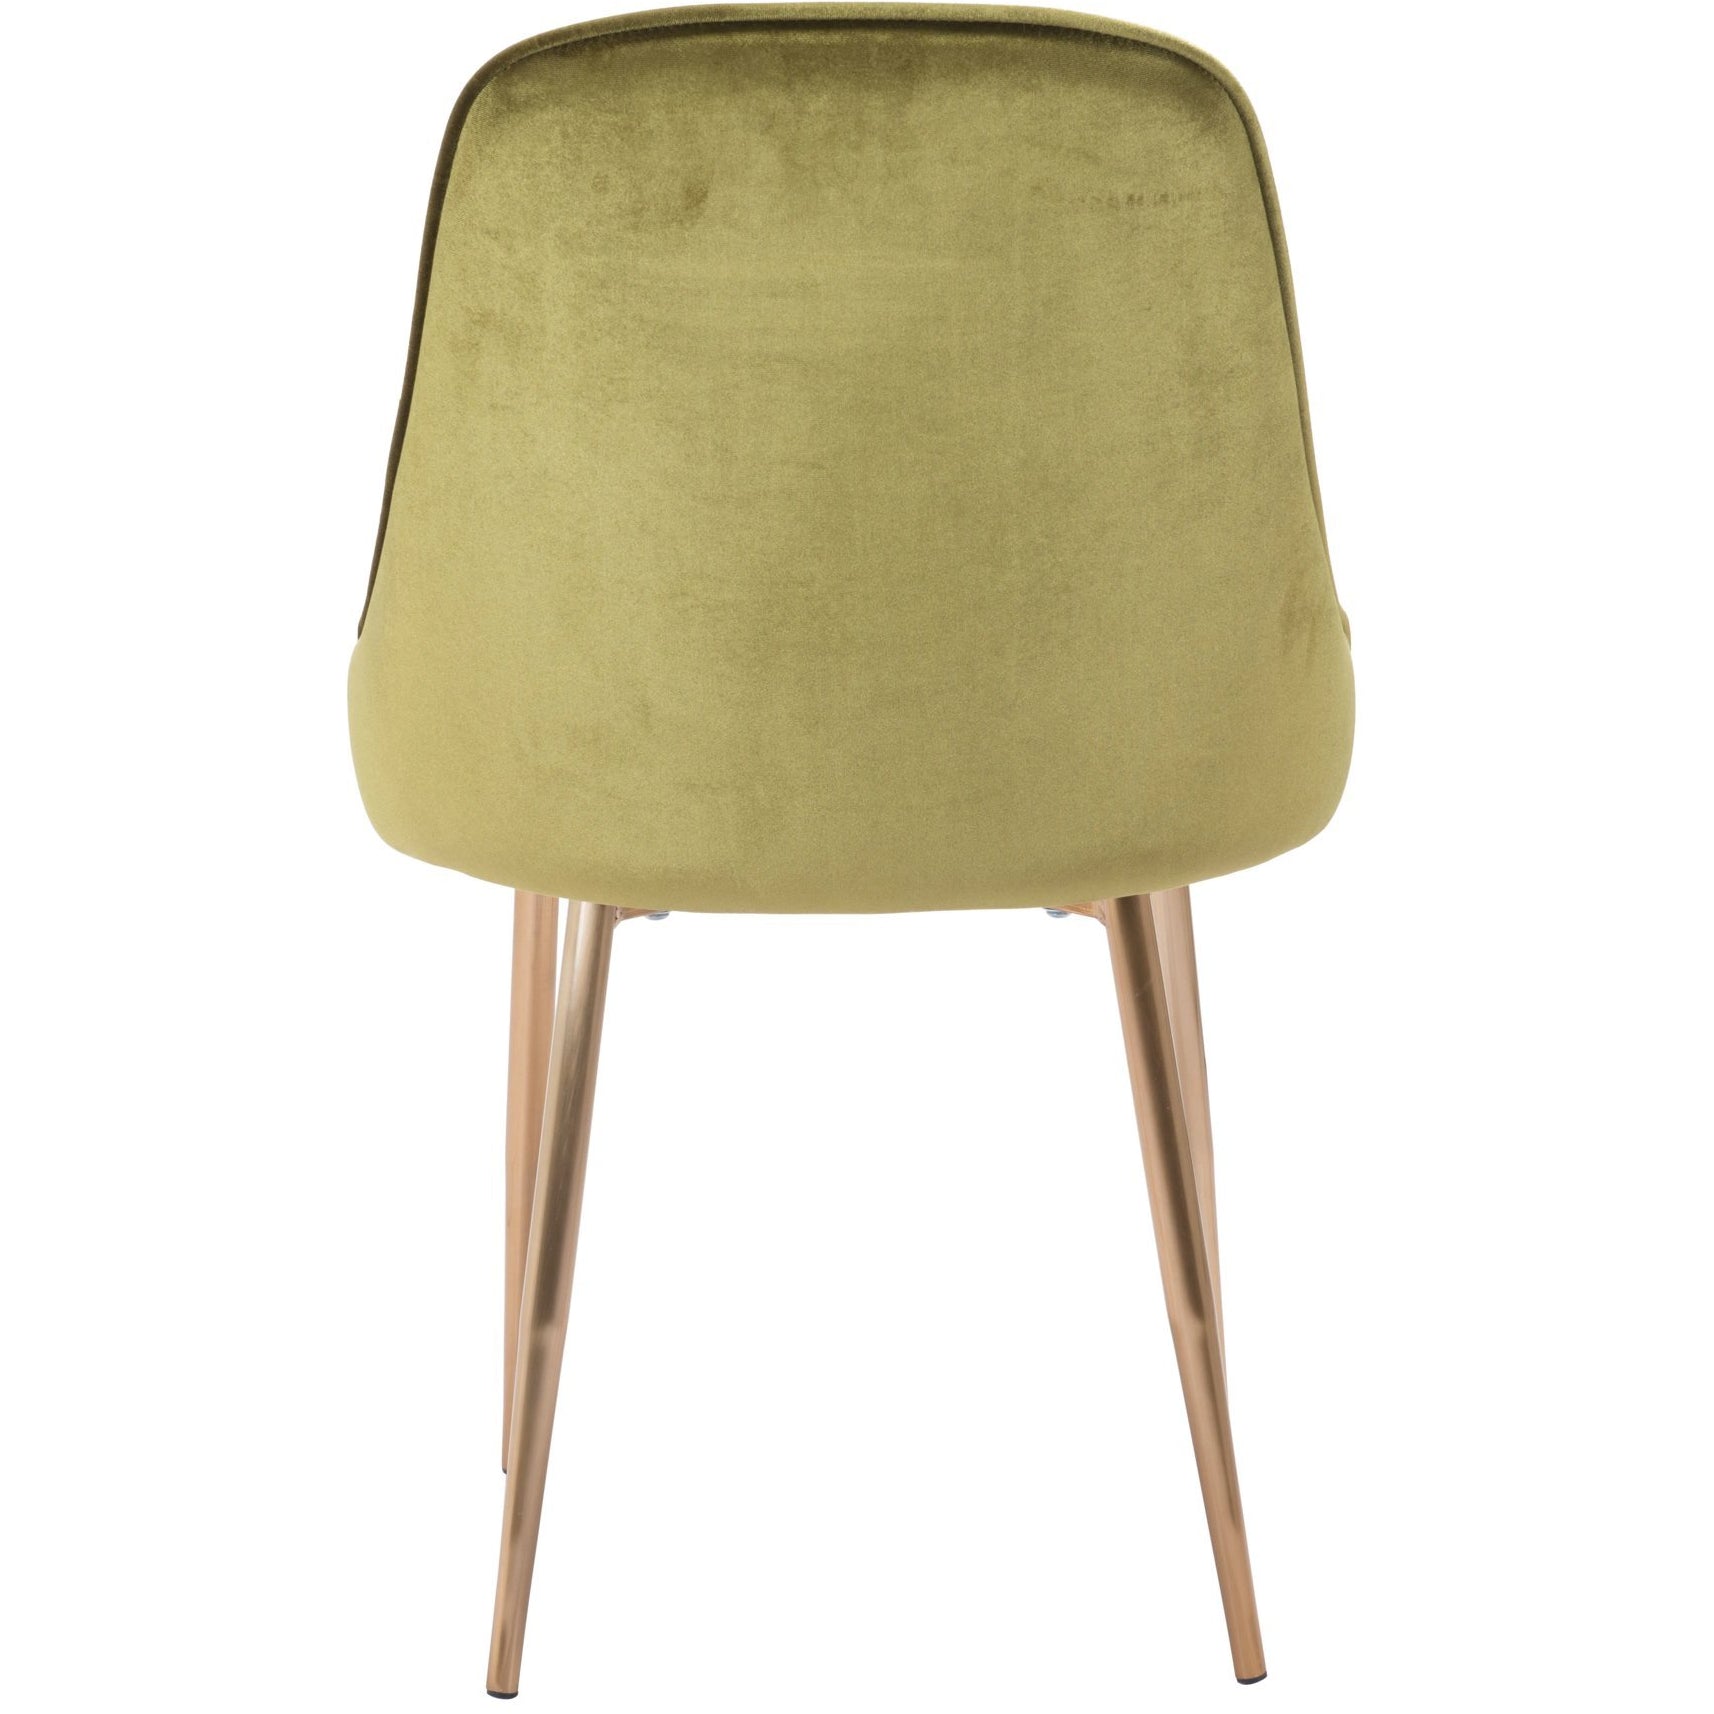 Zuo Modern Merritt Dining Chair Green Velvet - 100840-Dining Chairs-Zuo Modern-Minimal And Modern Canada